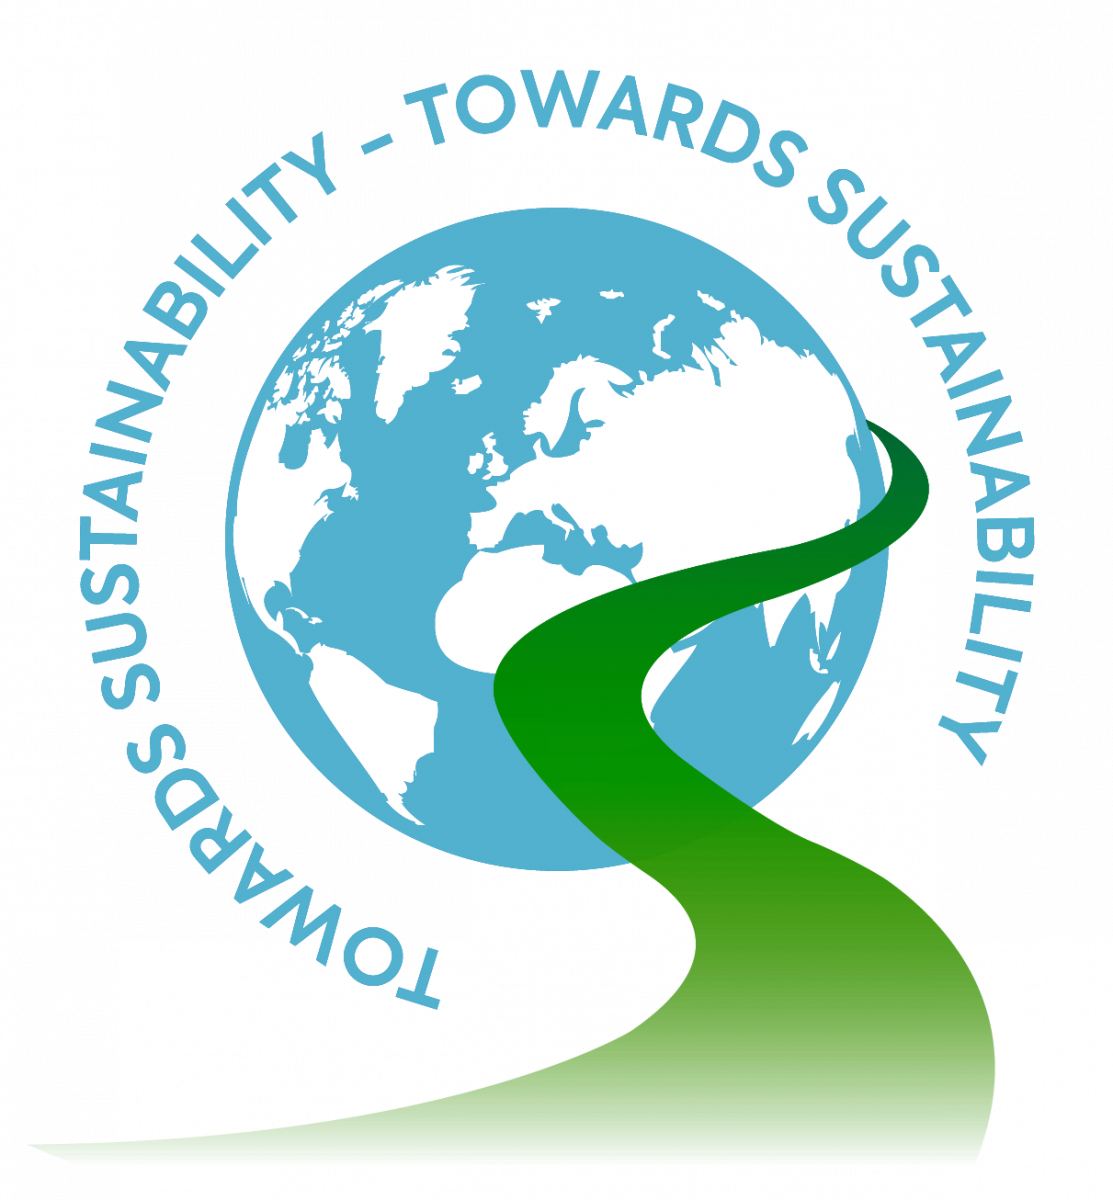 Le label "Towards Sustainability"